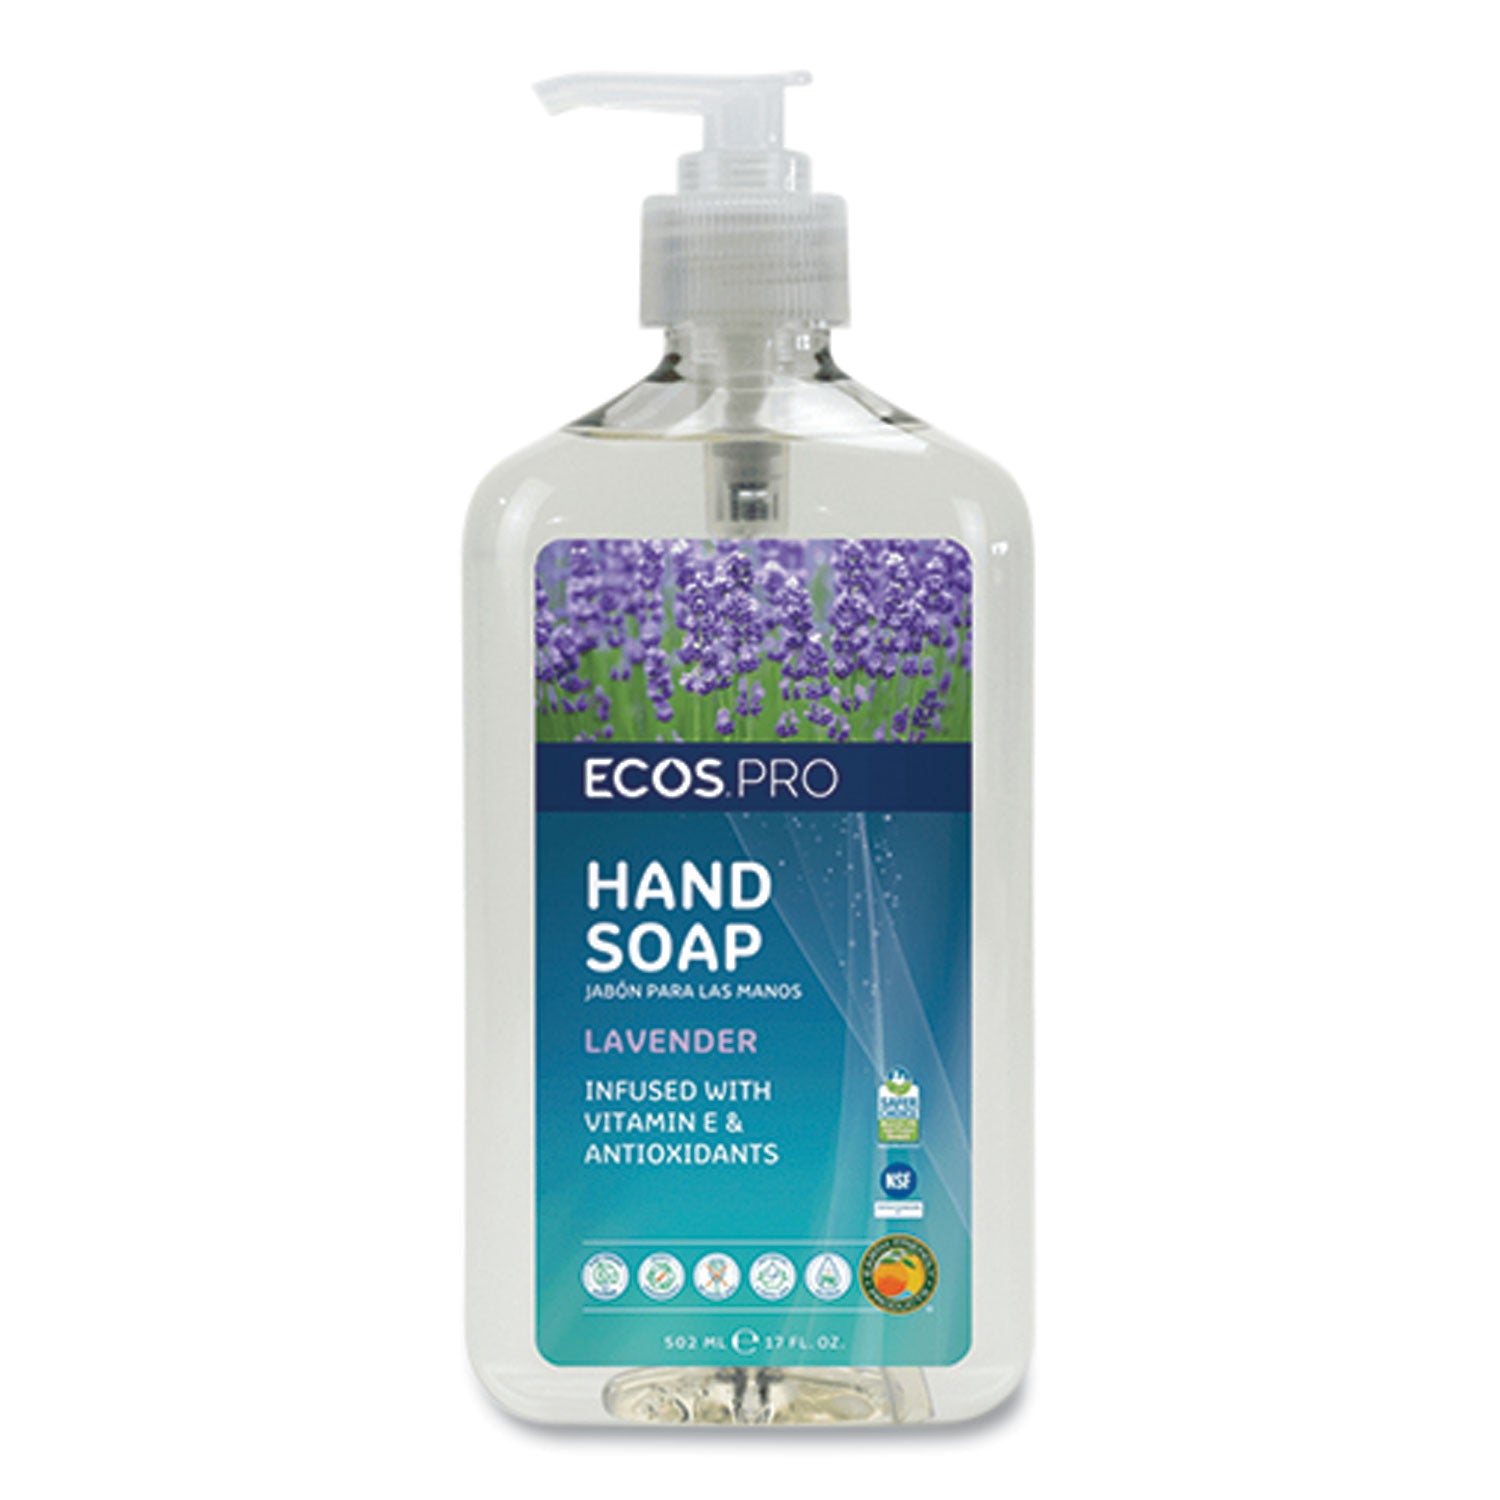 liquid-hand-soap-lavender-scent-17-oz-pump-bottle_eoppl96656 - 1